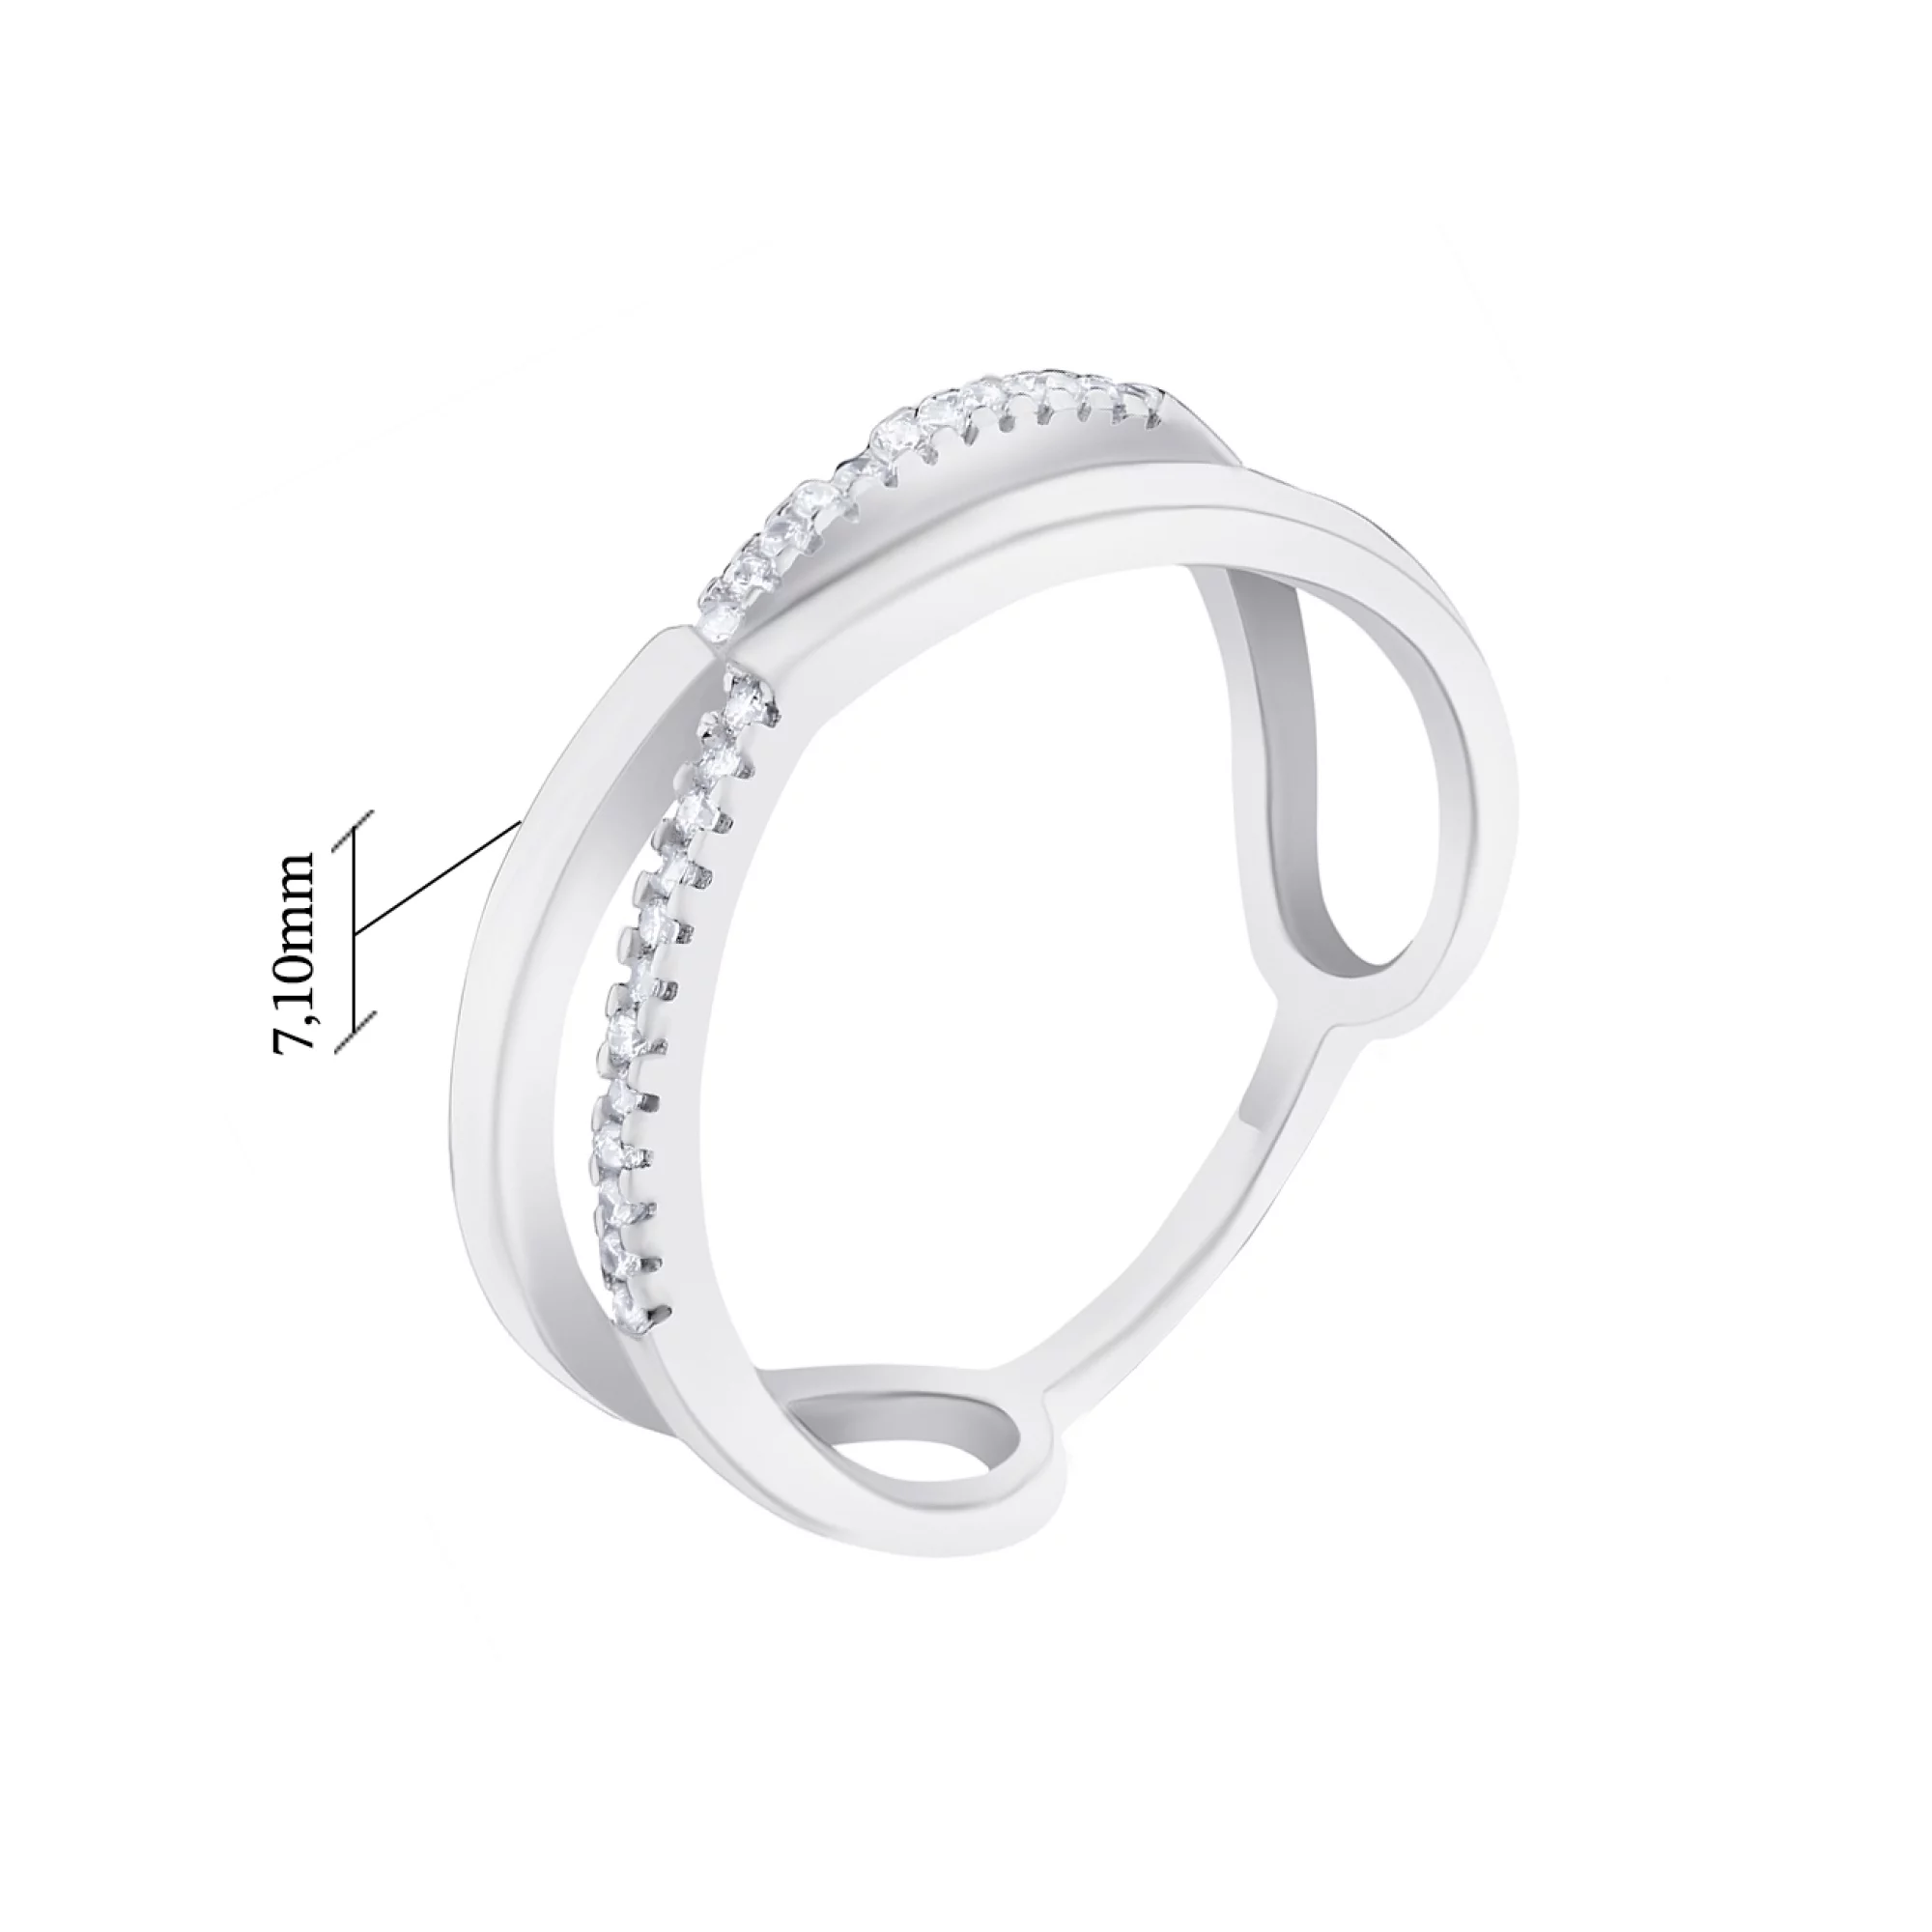 Двойное кольцо из серебра с дорожкой фианитов - 1572344 – изображение 2